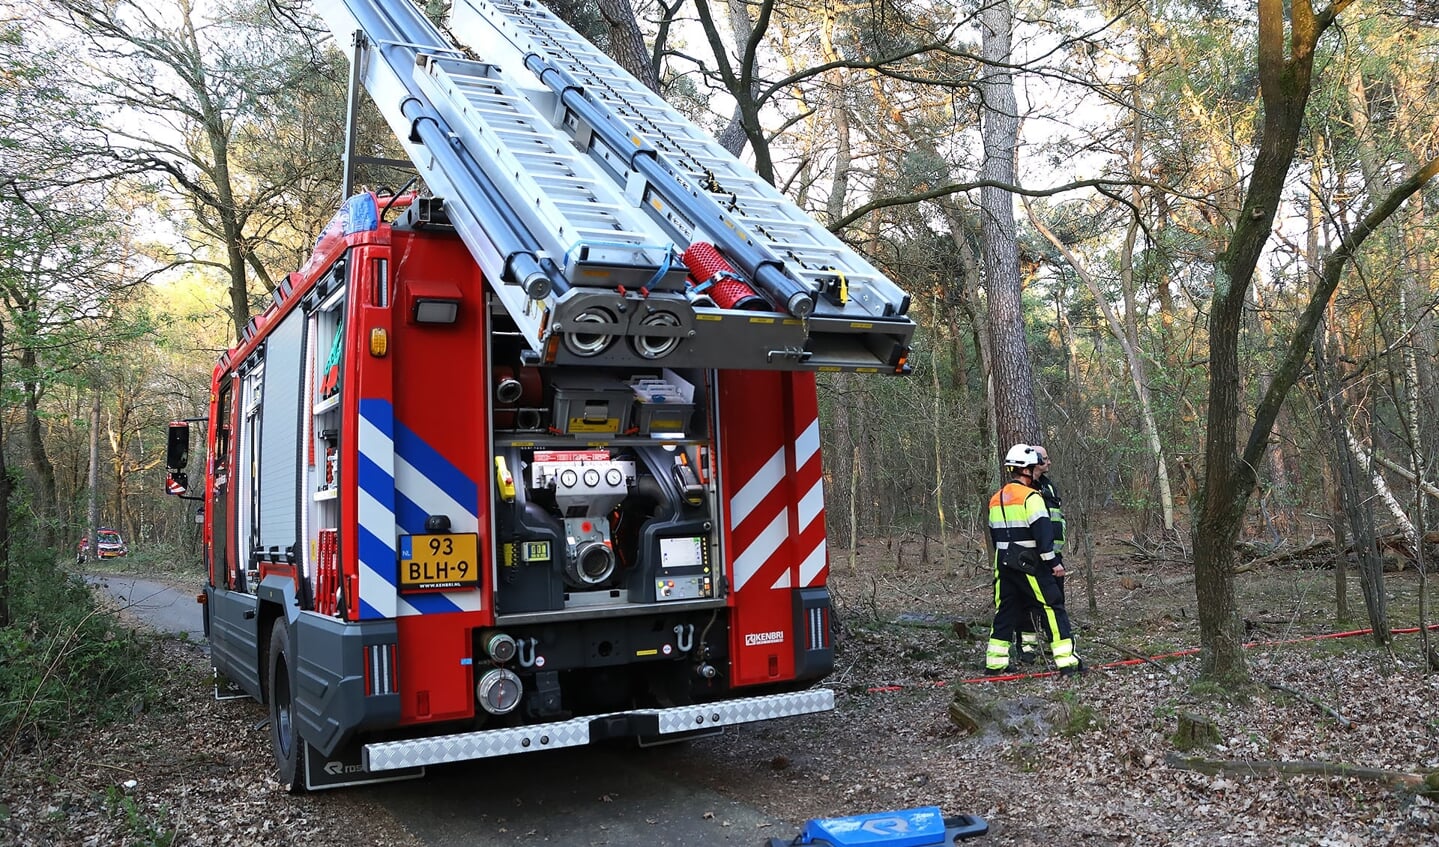 Flink stuk bos in brand in Geffense Bosjes. (Foto: Gabor Heeres / Foto Mallo)